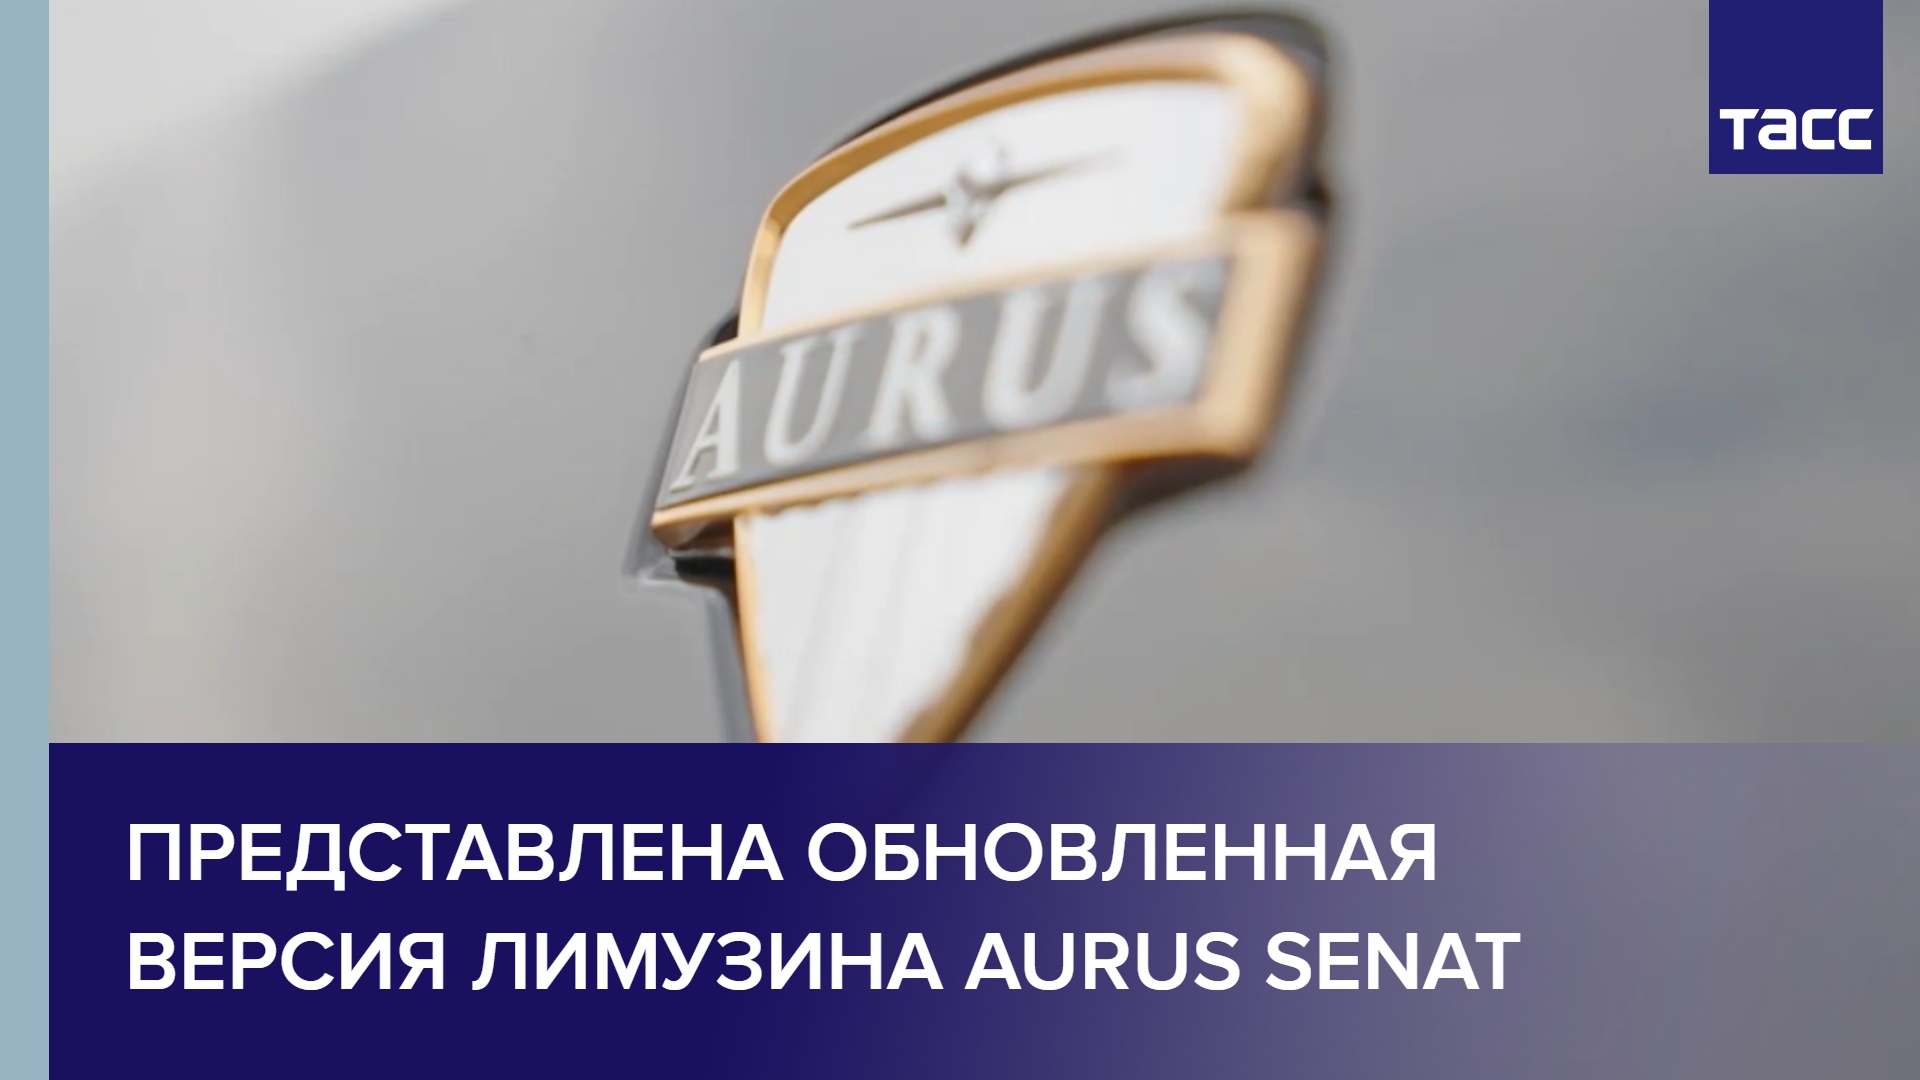 Представлена обновленная версия лимузина Aurus Senat